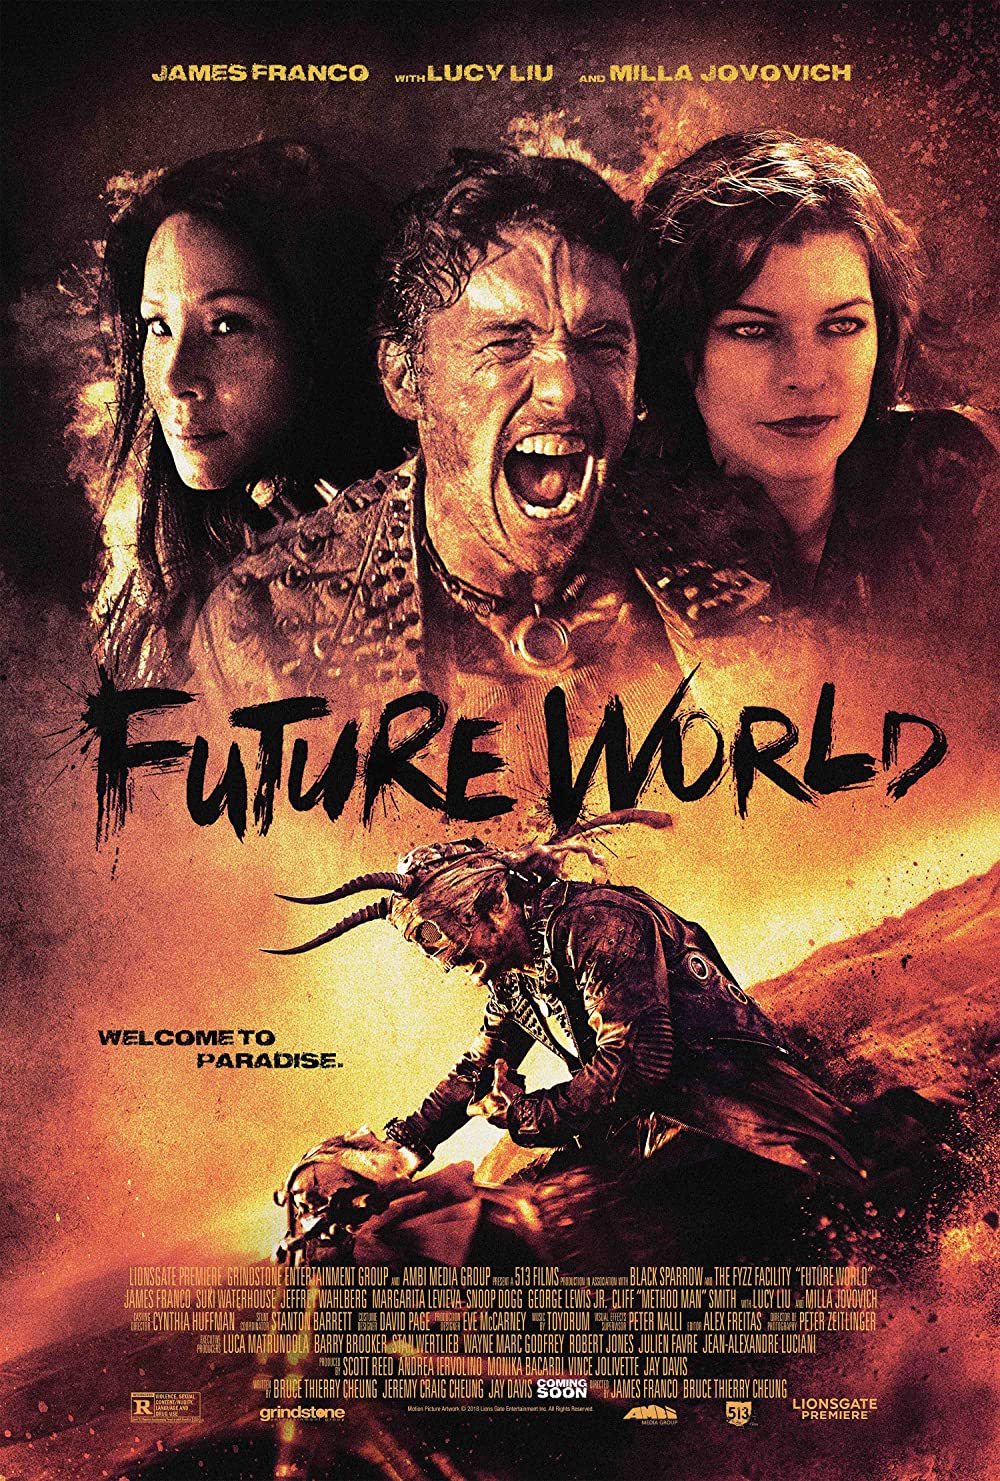 Filmbeschreibung zu Future World